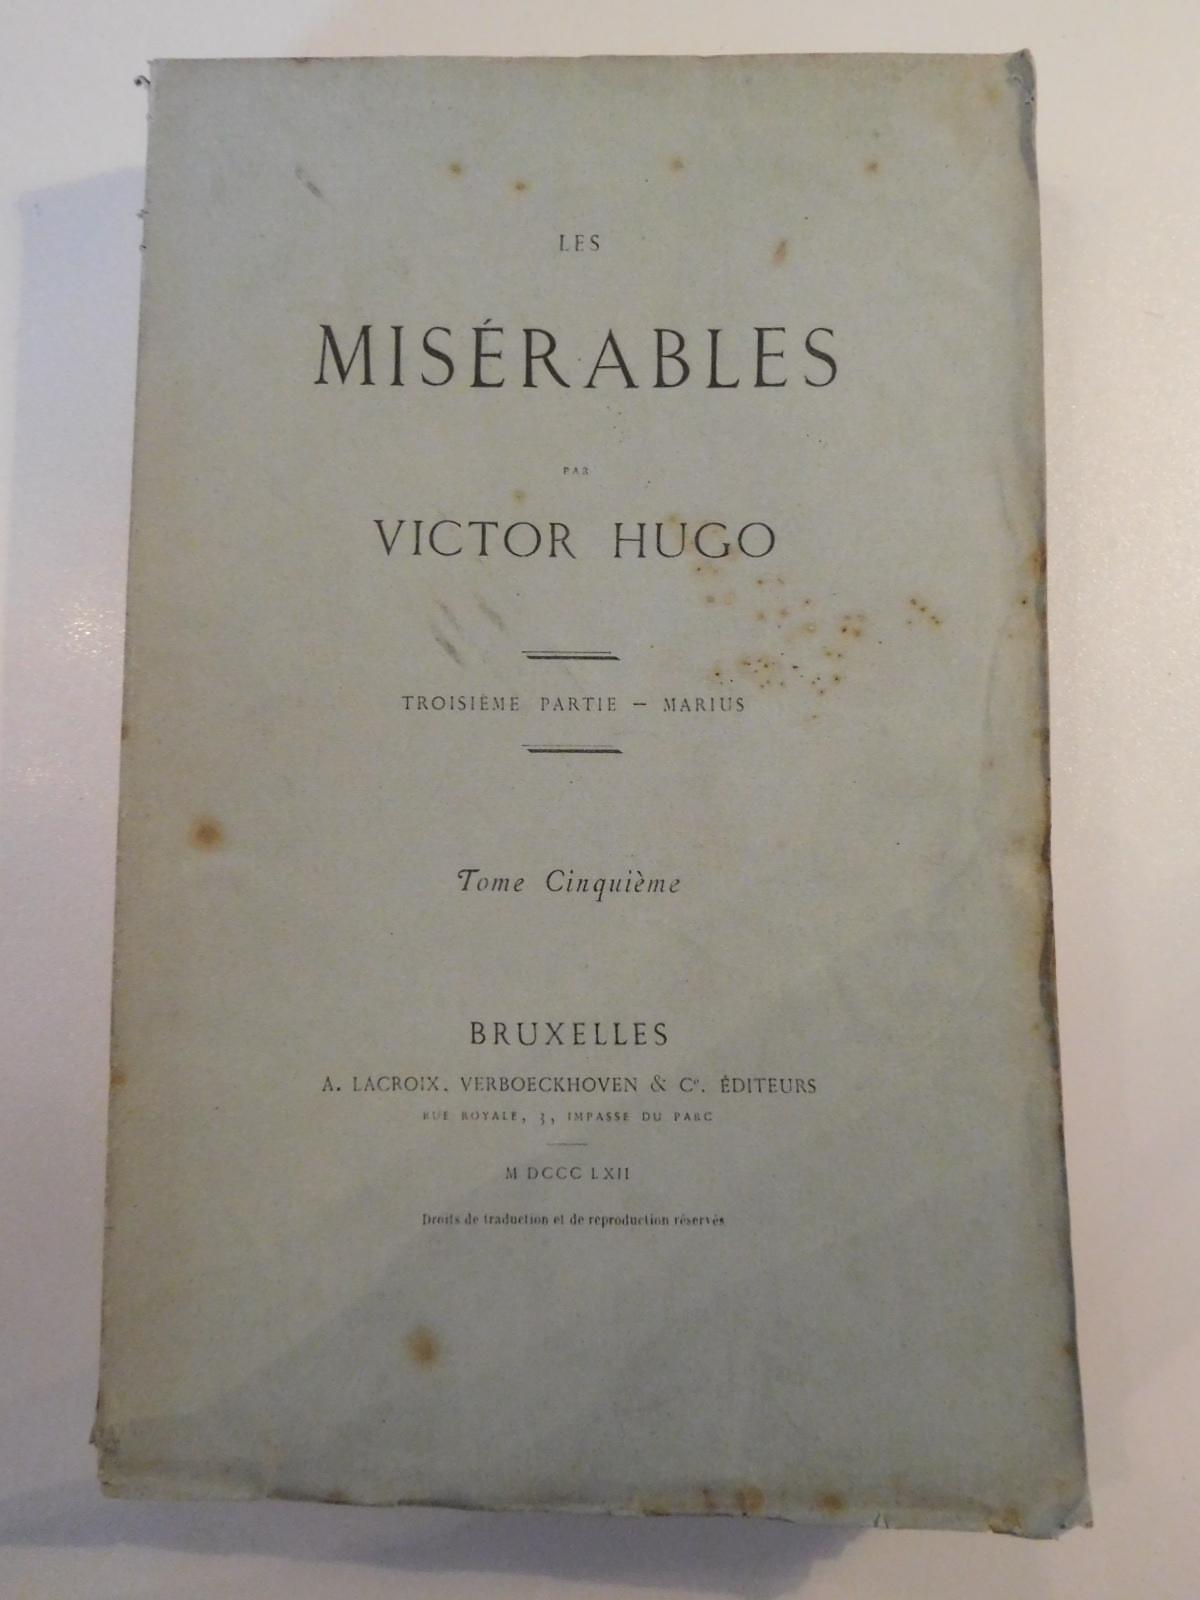 Les Misérables. Troisième partie - Marius - Tome cinquième (French language, 1862)